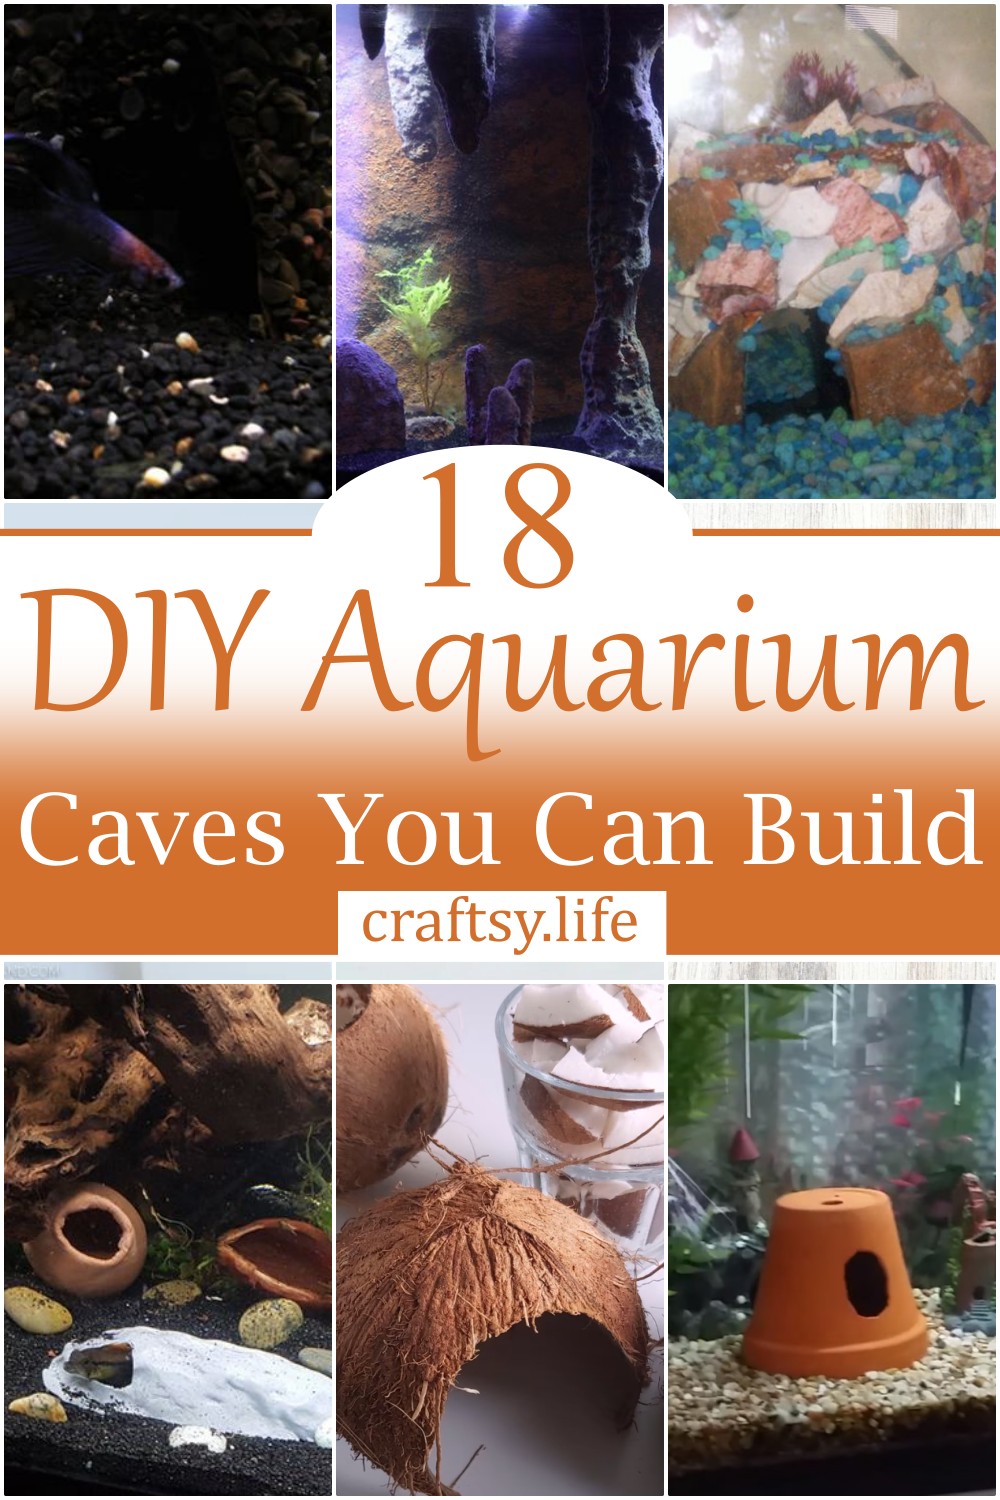 DIY Aquarium Caves You Can Build